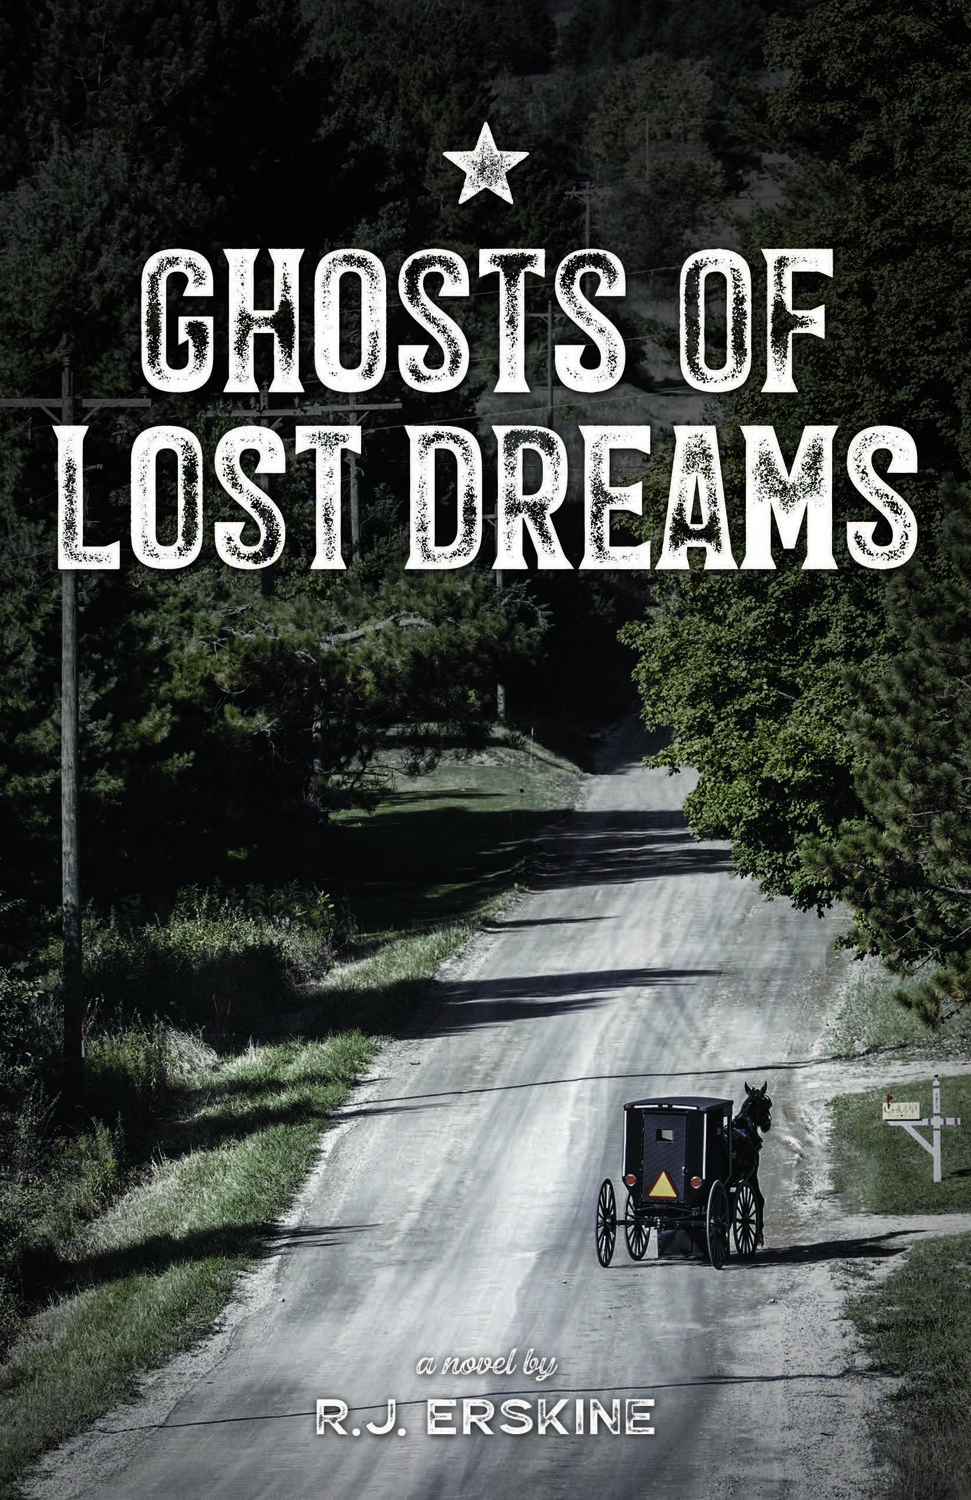 “Ghosts of Lost Dreams” by R.J. Erskine